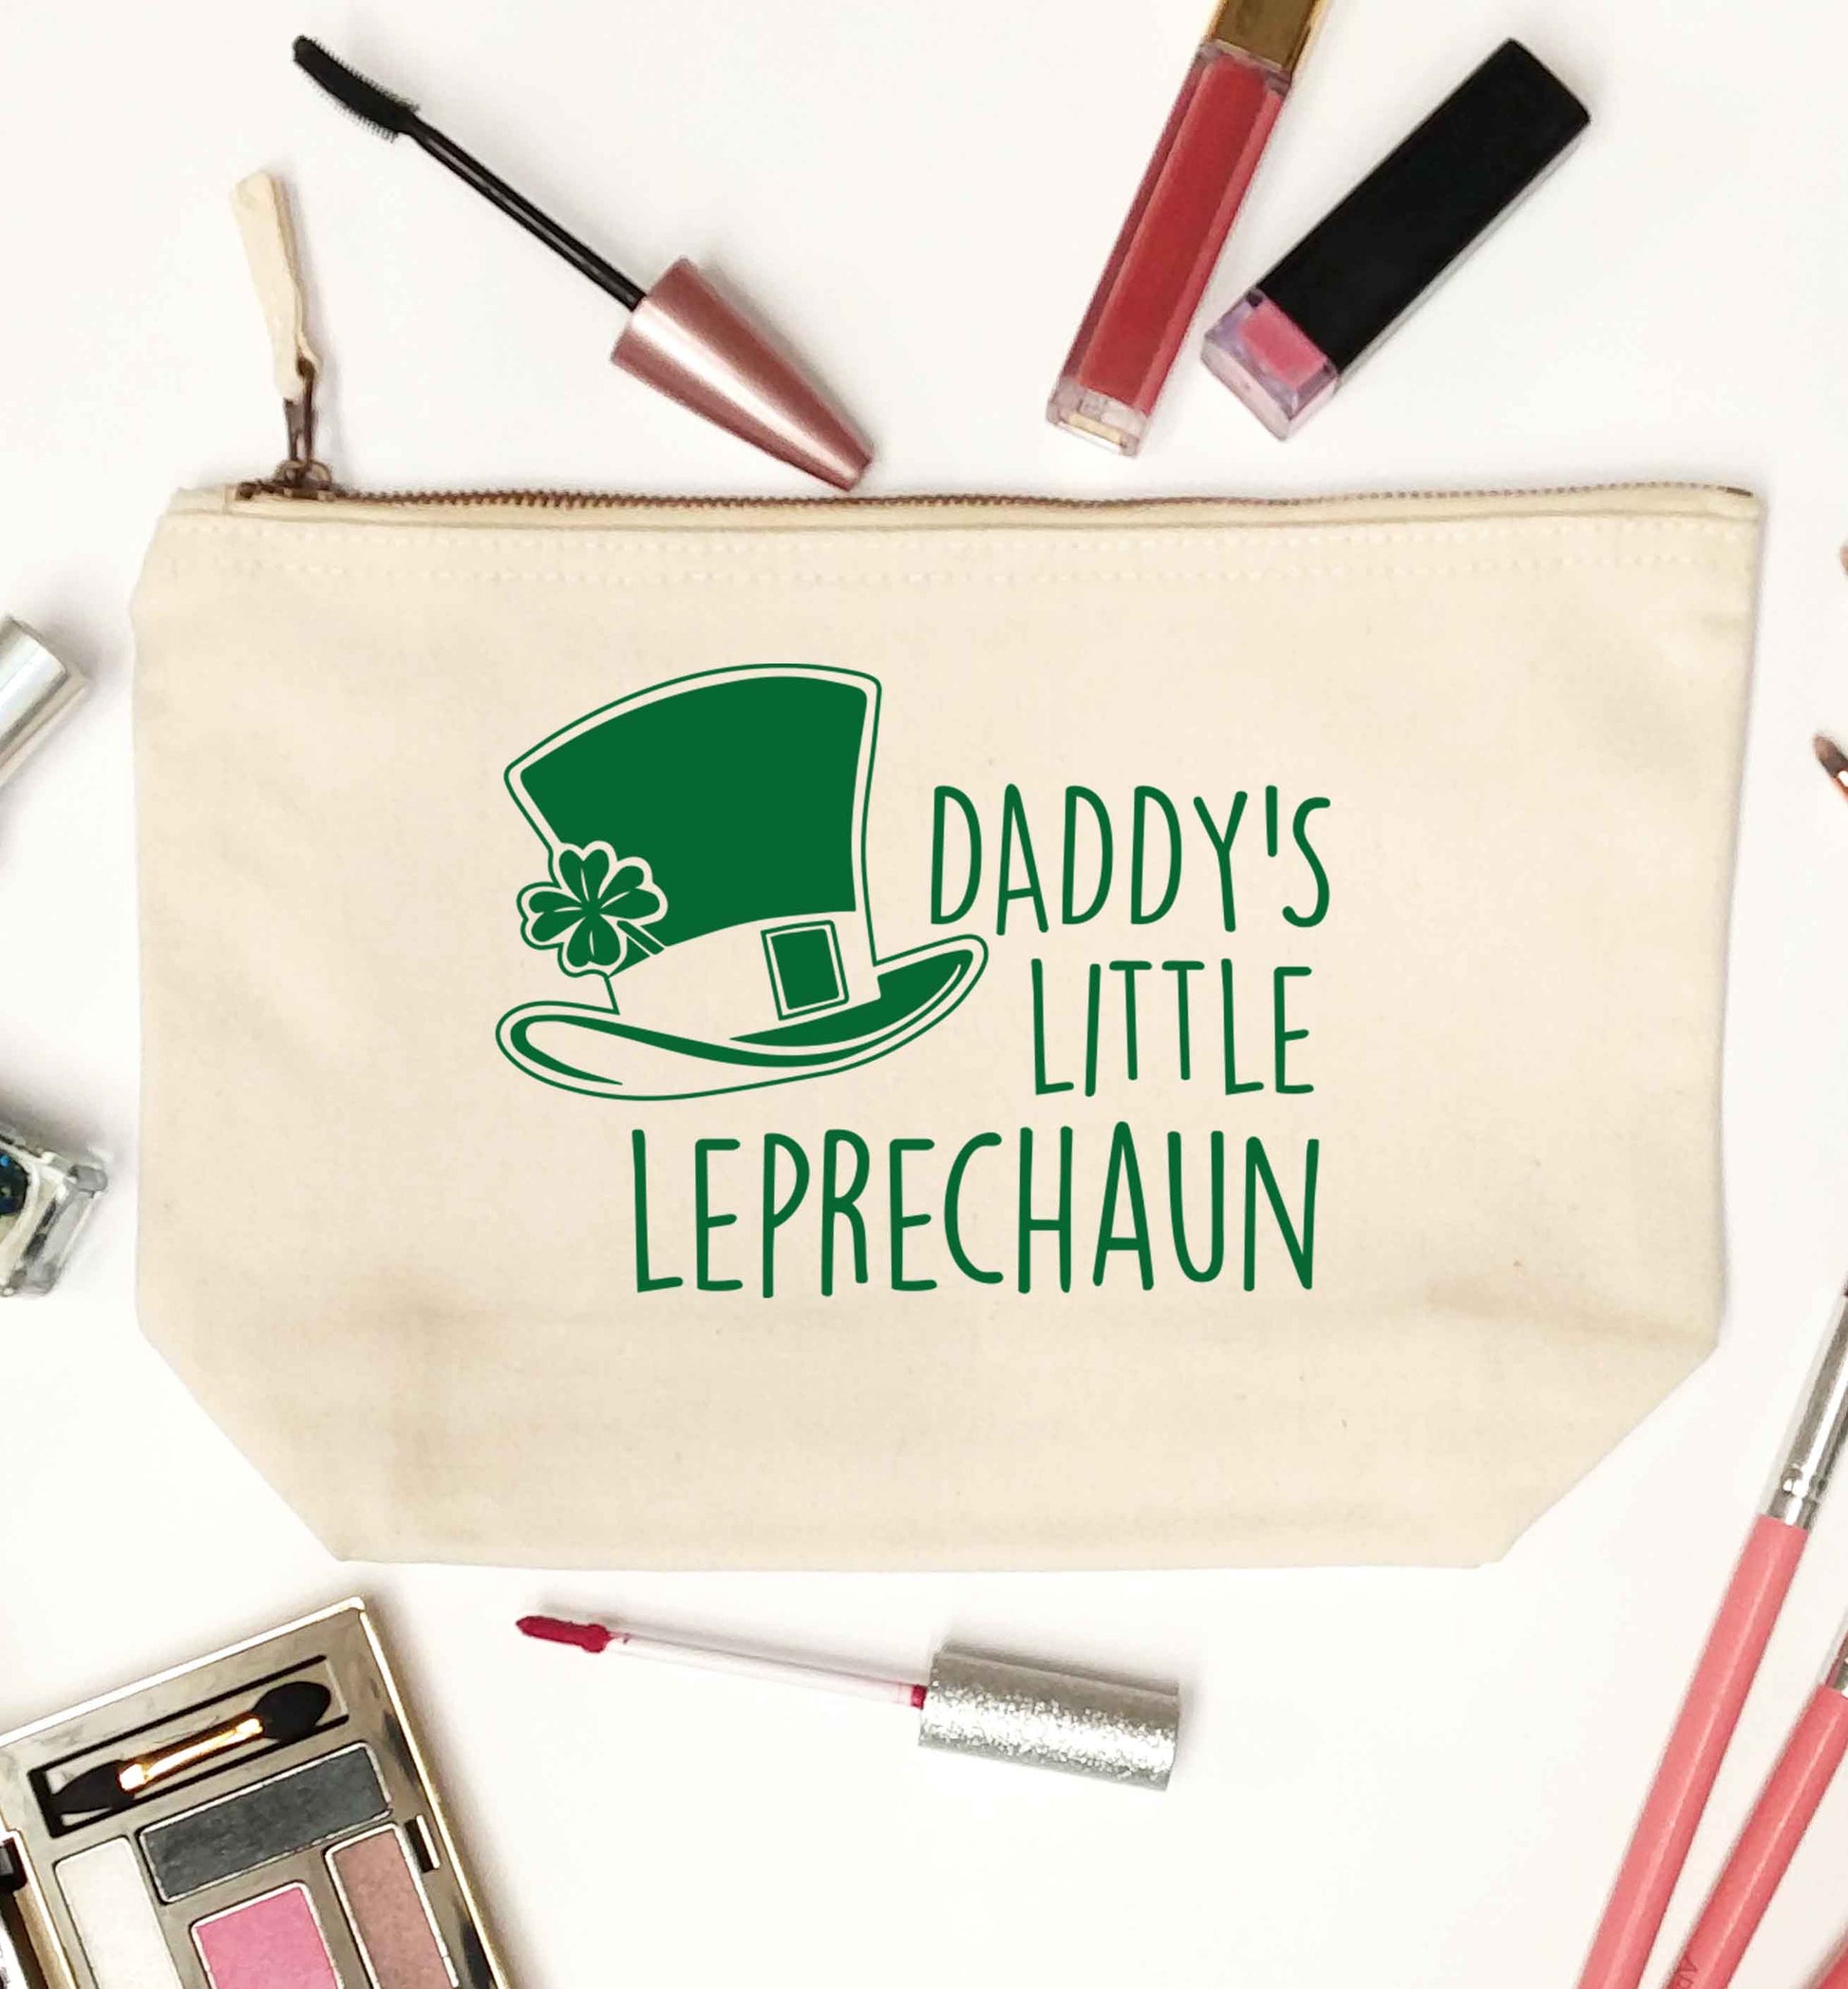 Daddy's little leprechaun natural makeup bag